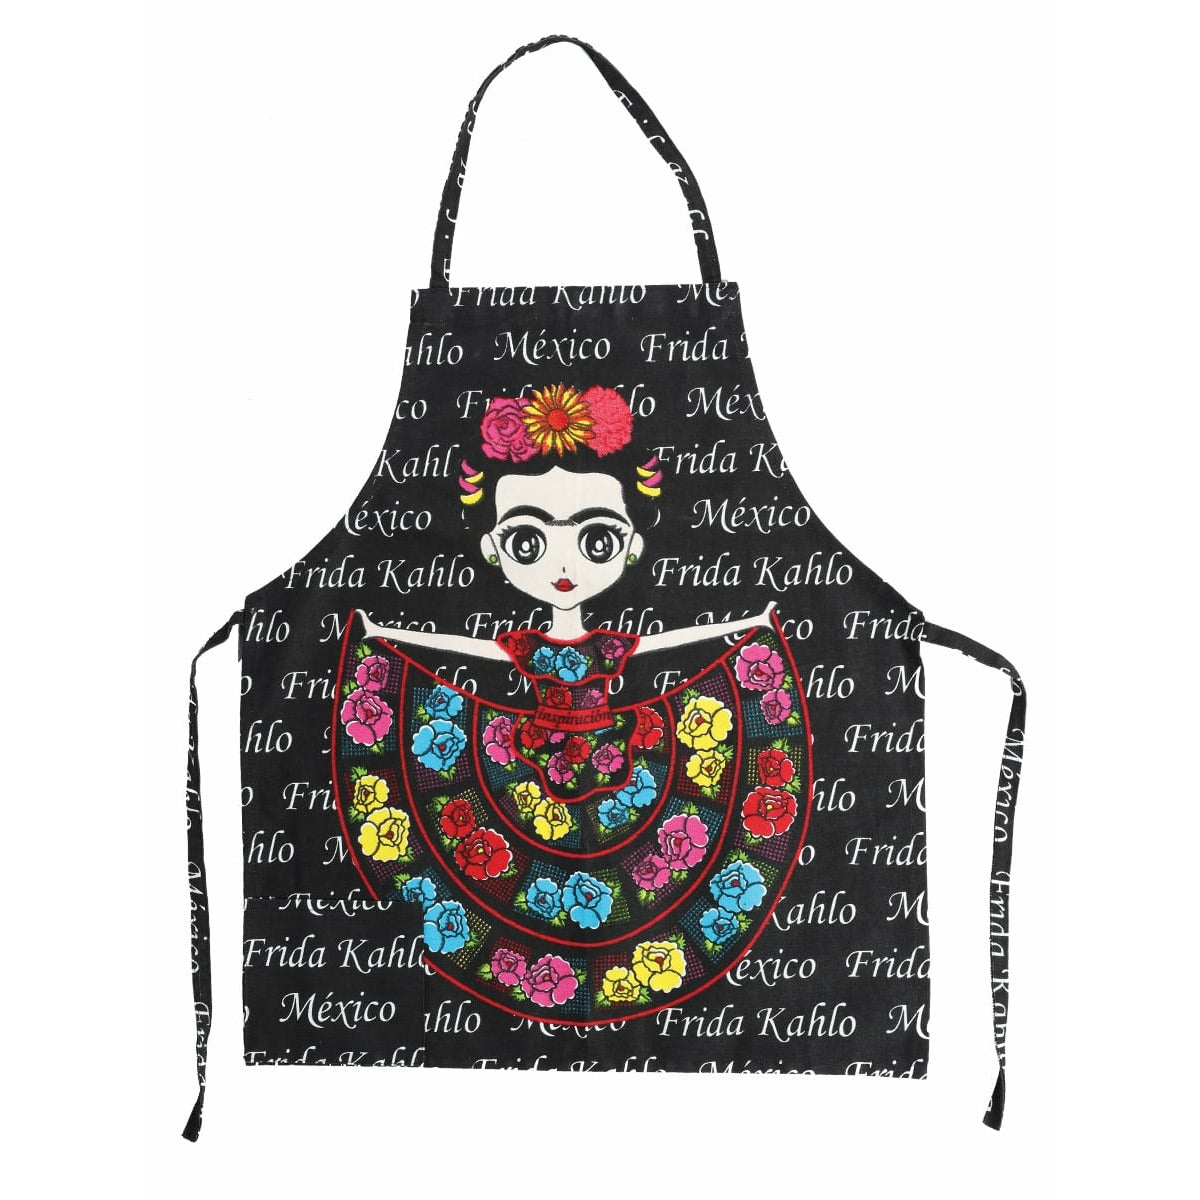 Mandil Frida Kahlo - CharroAzteca.com